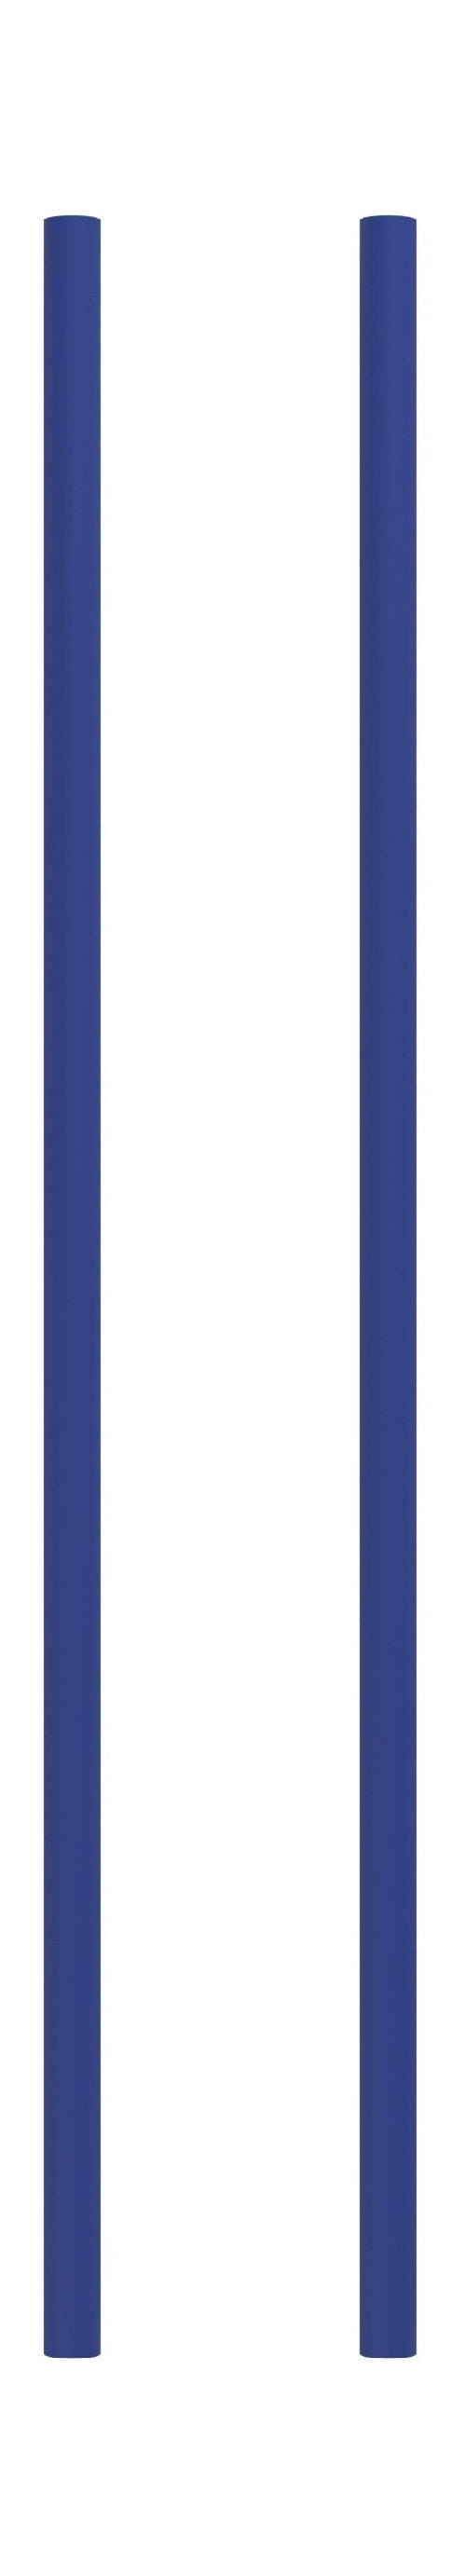 Moebe Rekken systeem/muurplanken been 65 cm, diepblauw